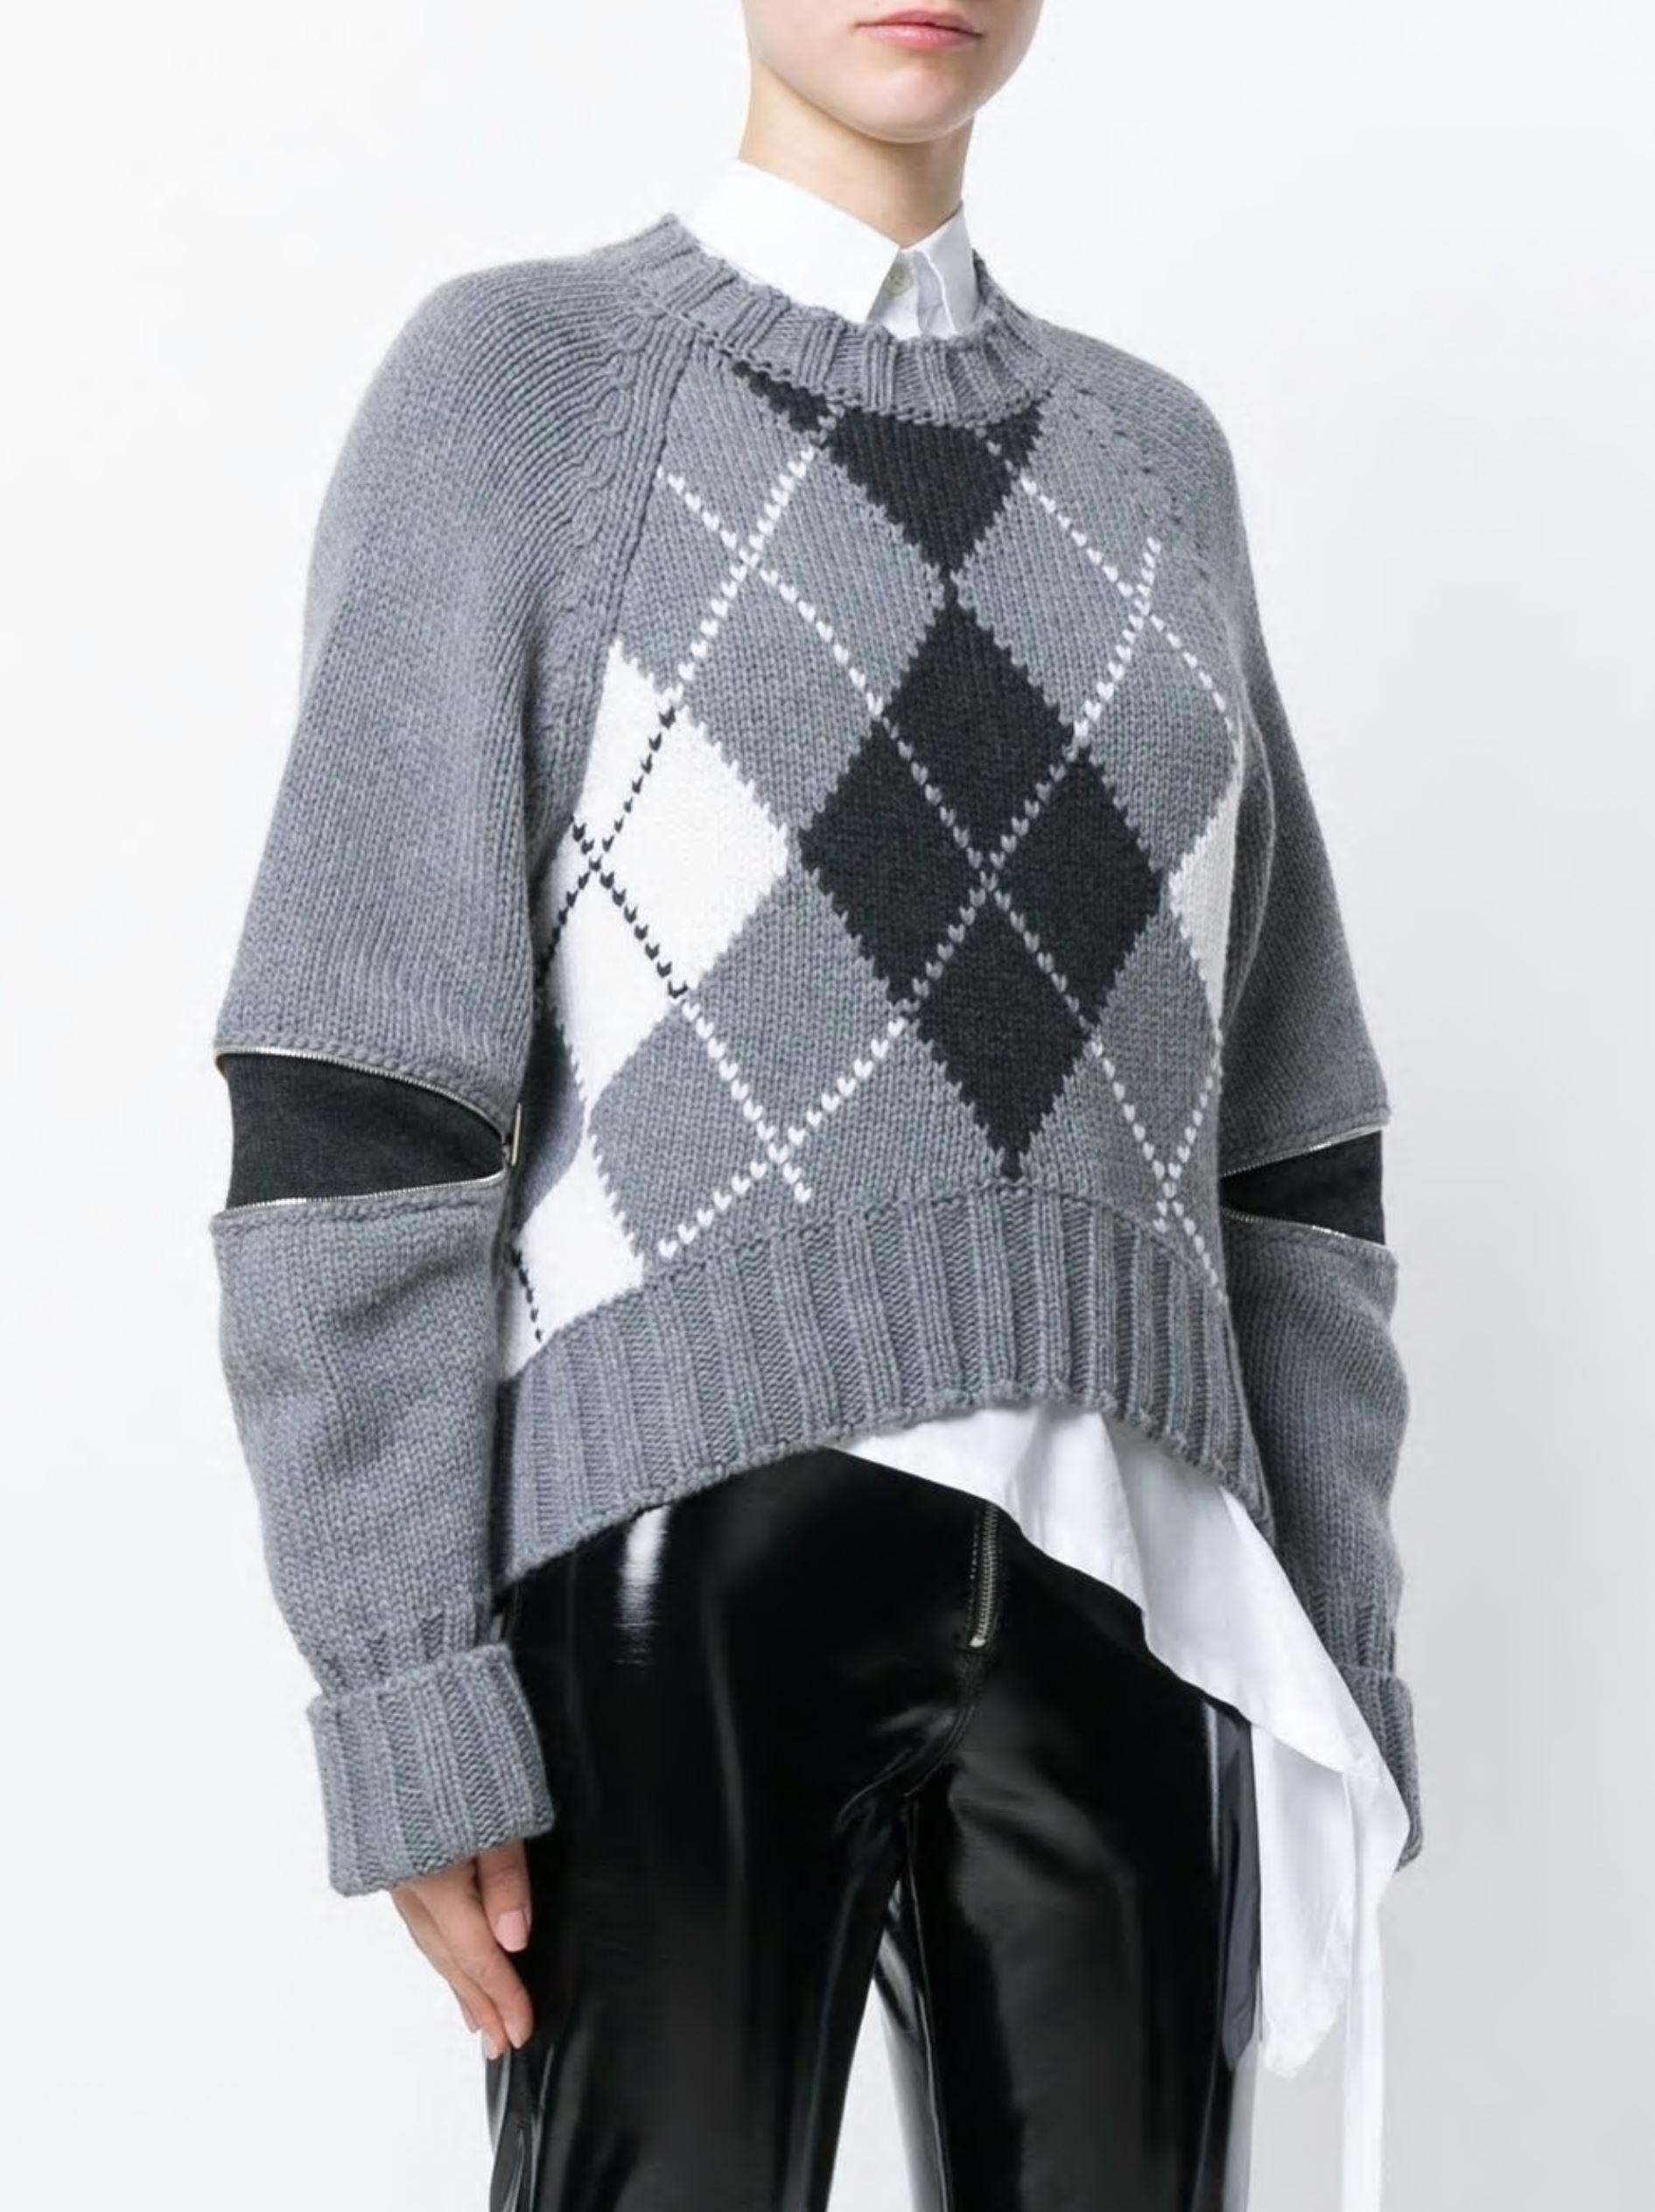 Gray New Laura Dern Big Little Lies Alexander McQueen Argyle Sweater  $1295